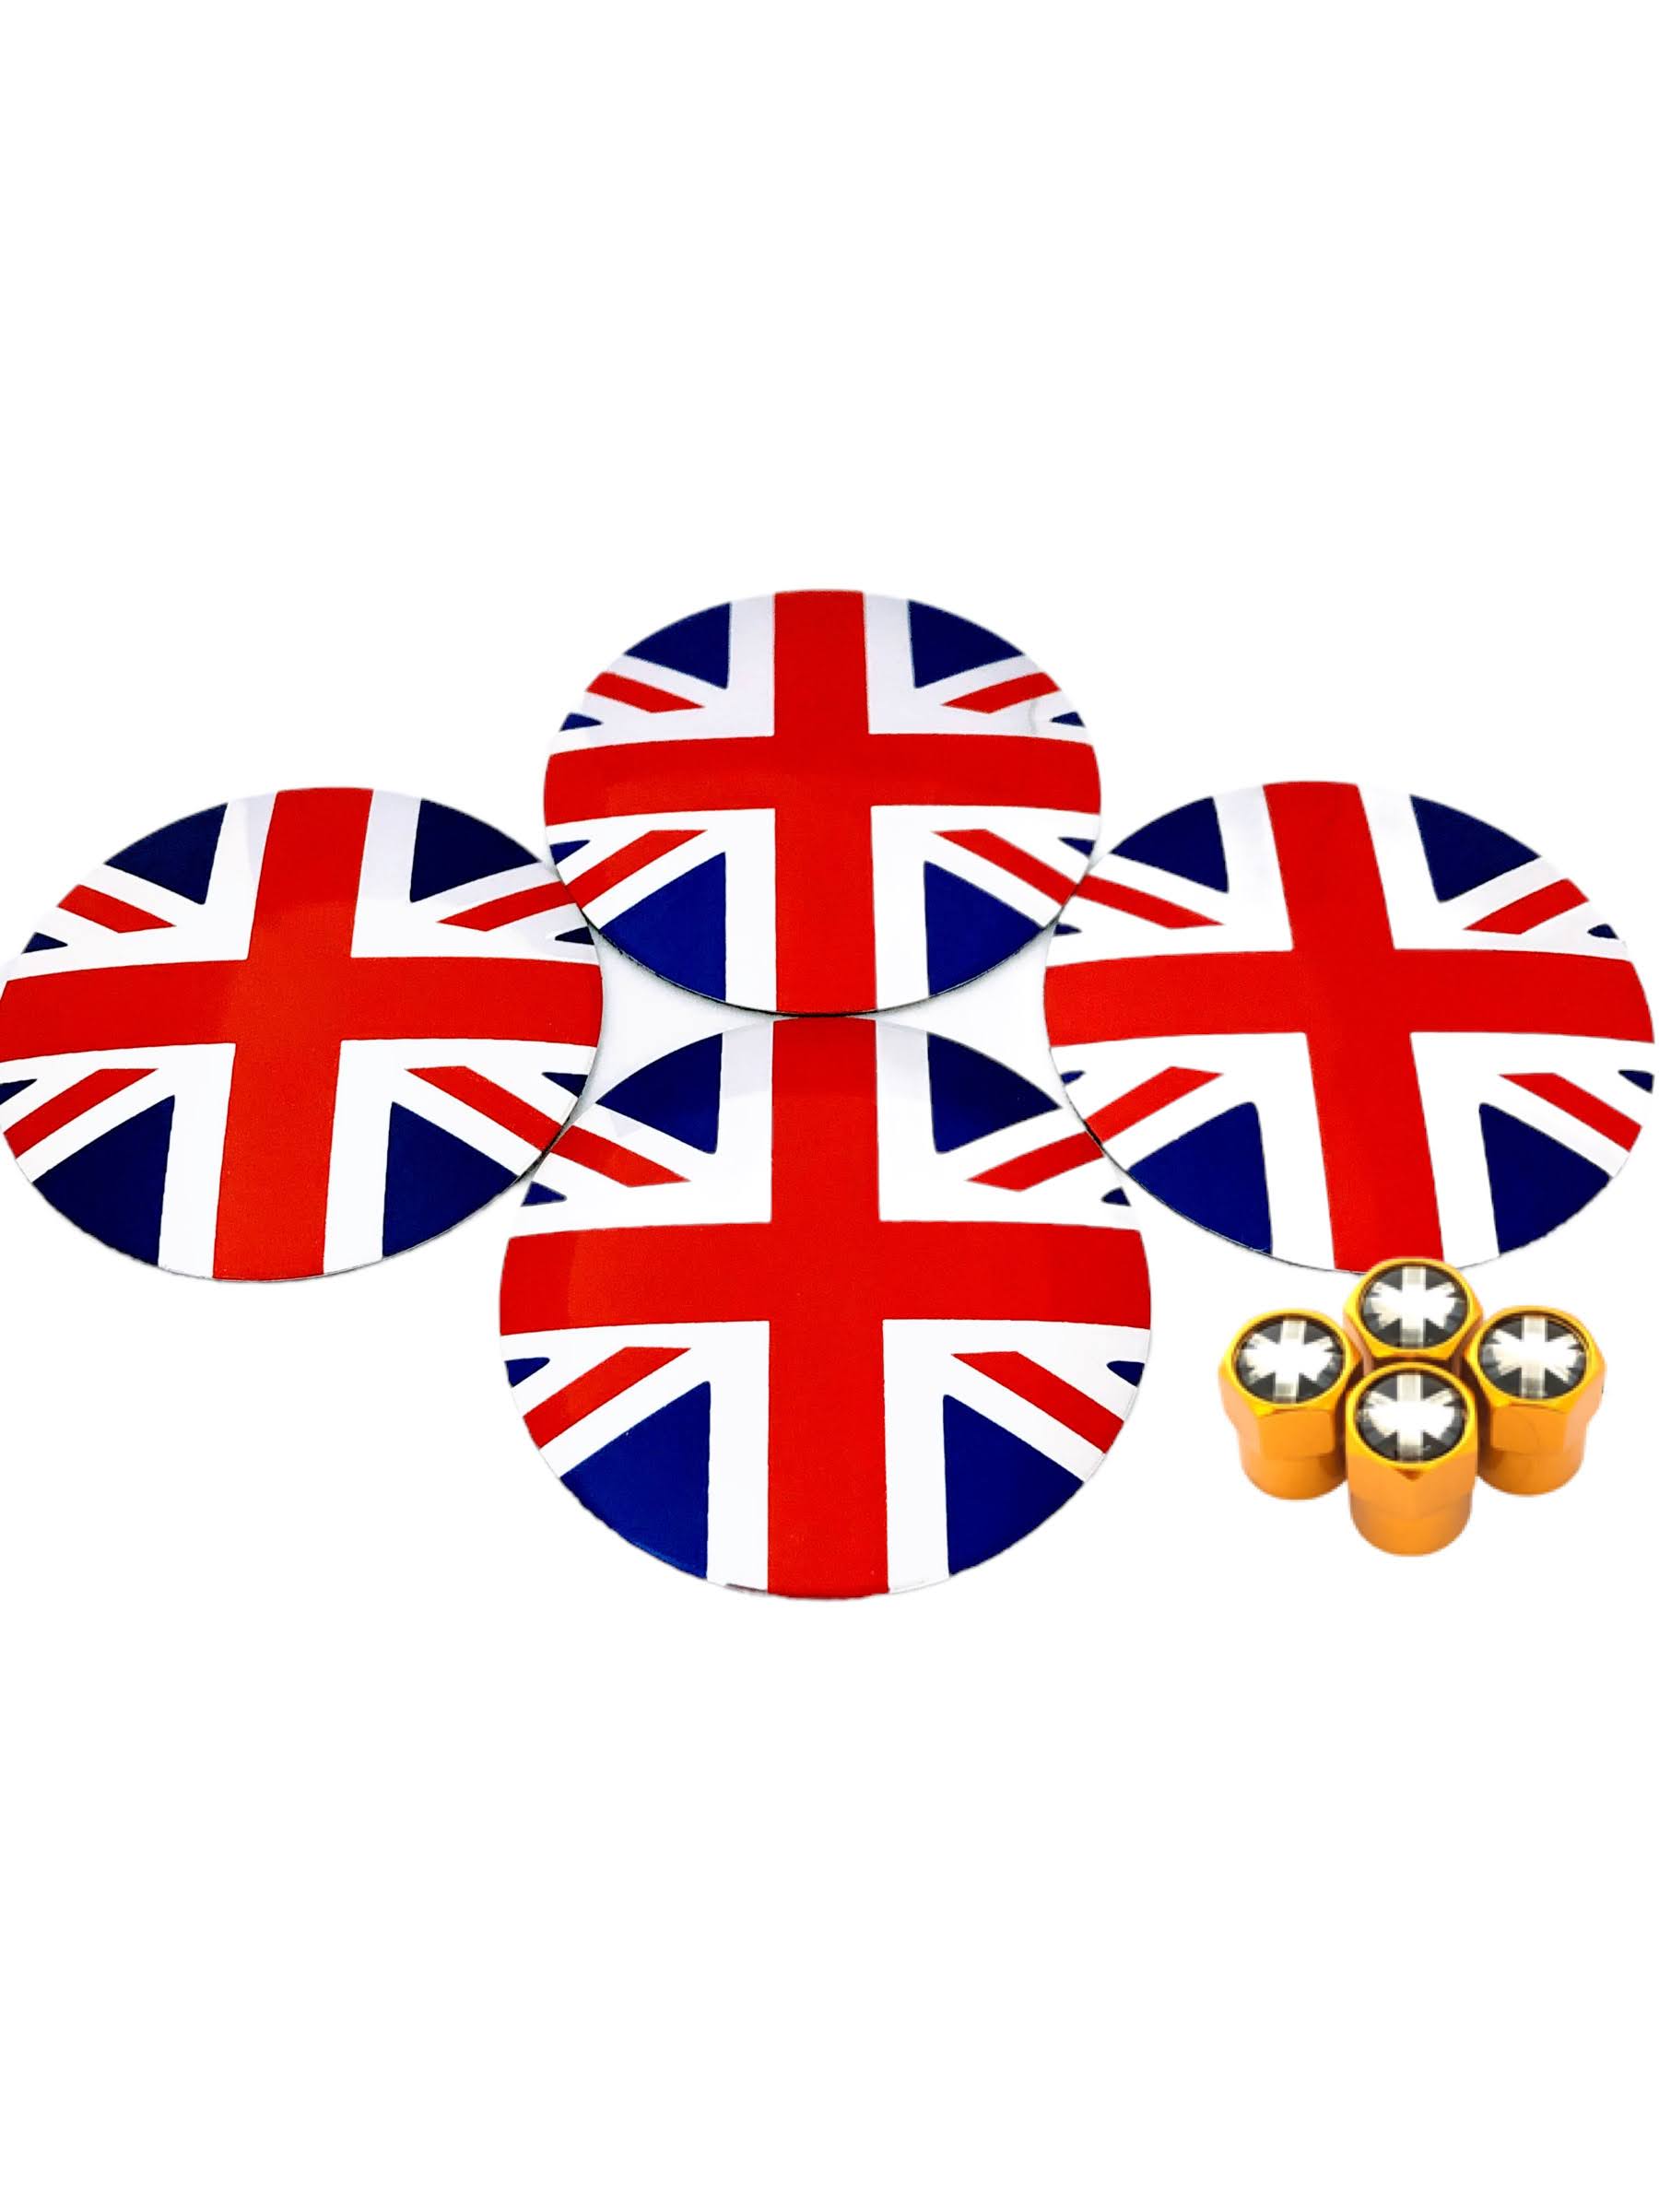 G イギリス 選べるバルブキャップカラー 国旗 キャップ シール センター ステッカー ユニオンジャ...